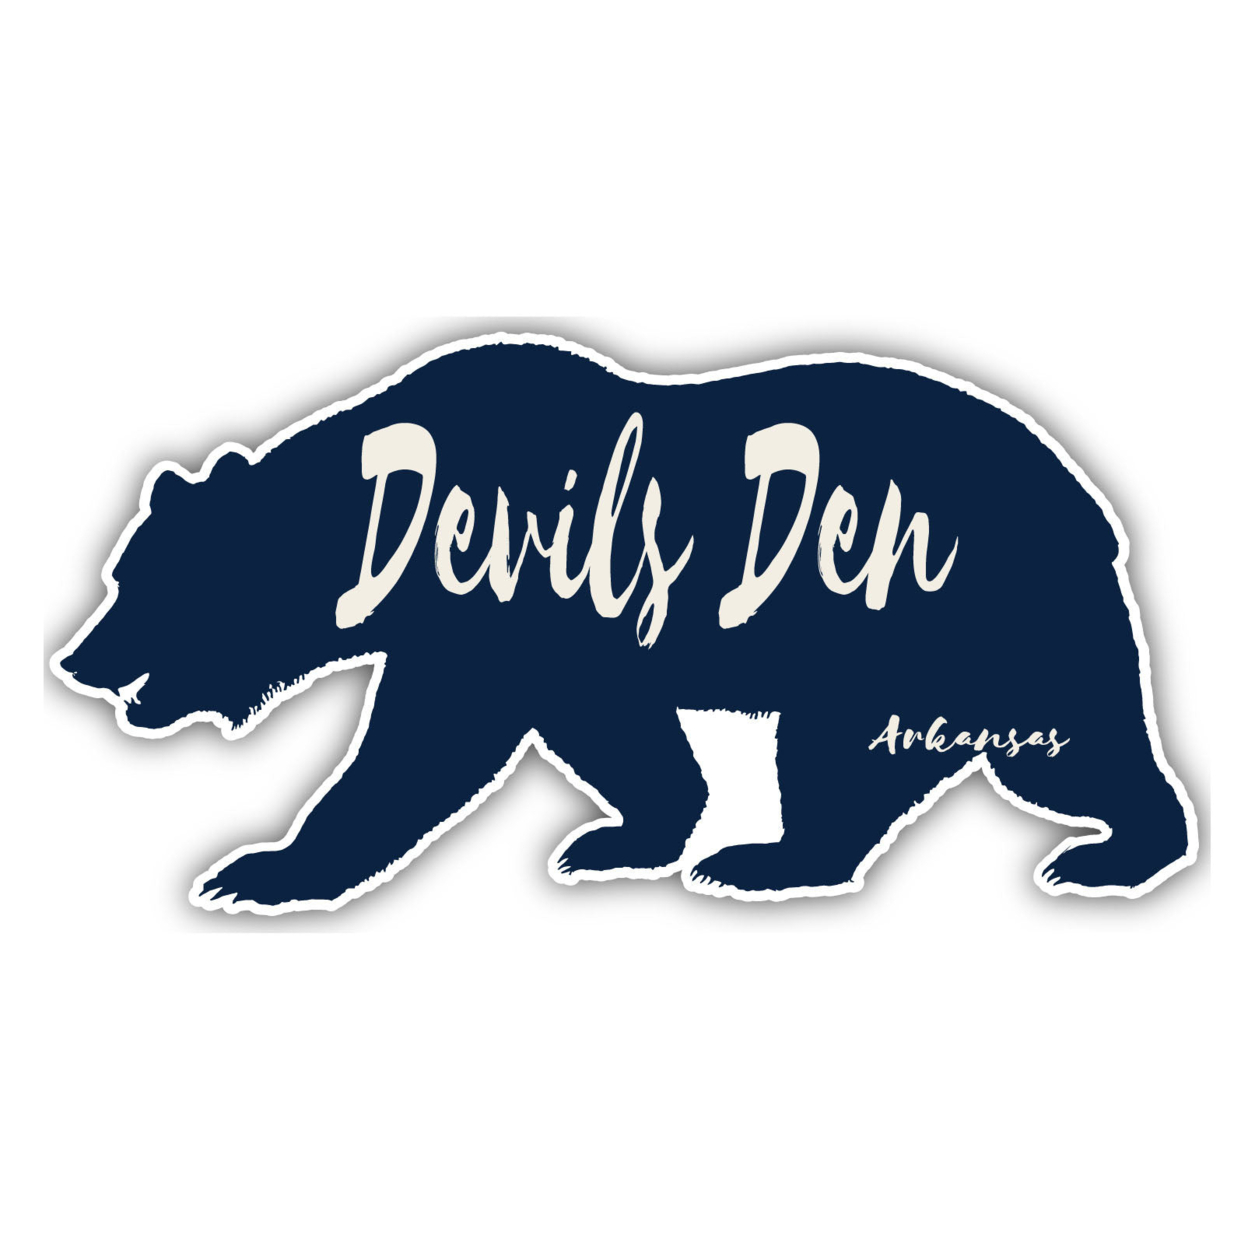 Devils Den Arkansas Souvenir Decorative Stickers (Choose Theme And Size) - Single Unit, 10-Inch, Great Outdoors